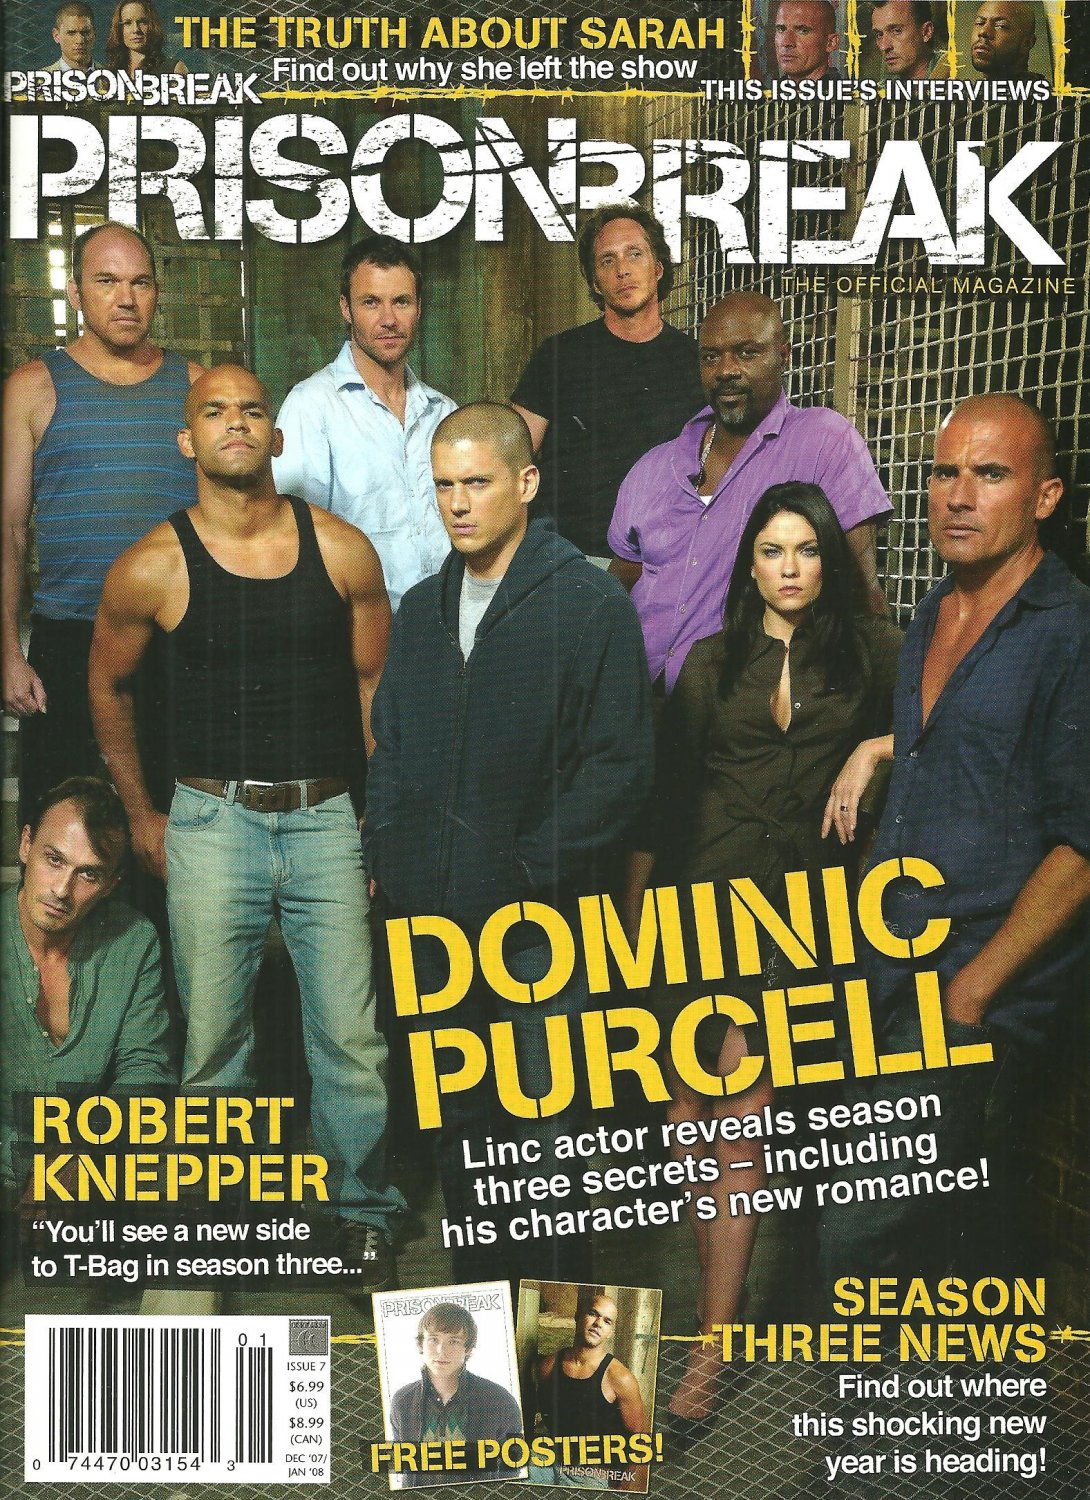 PRISON BREAK MAGAZINE #7 December/January 2008 DOMINIC PURCELL Robert Knepper